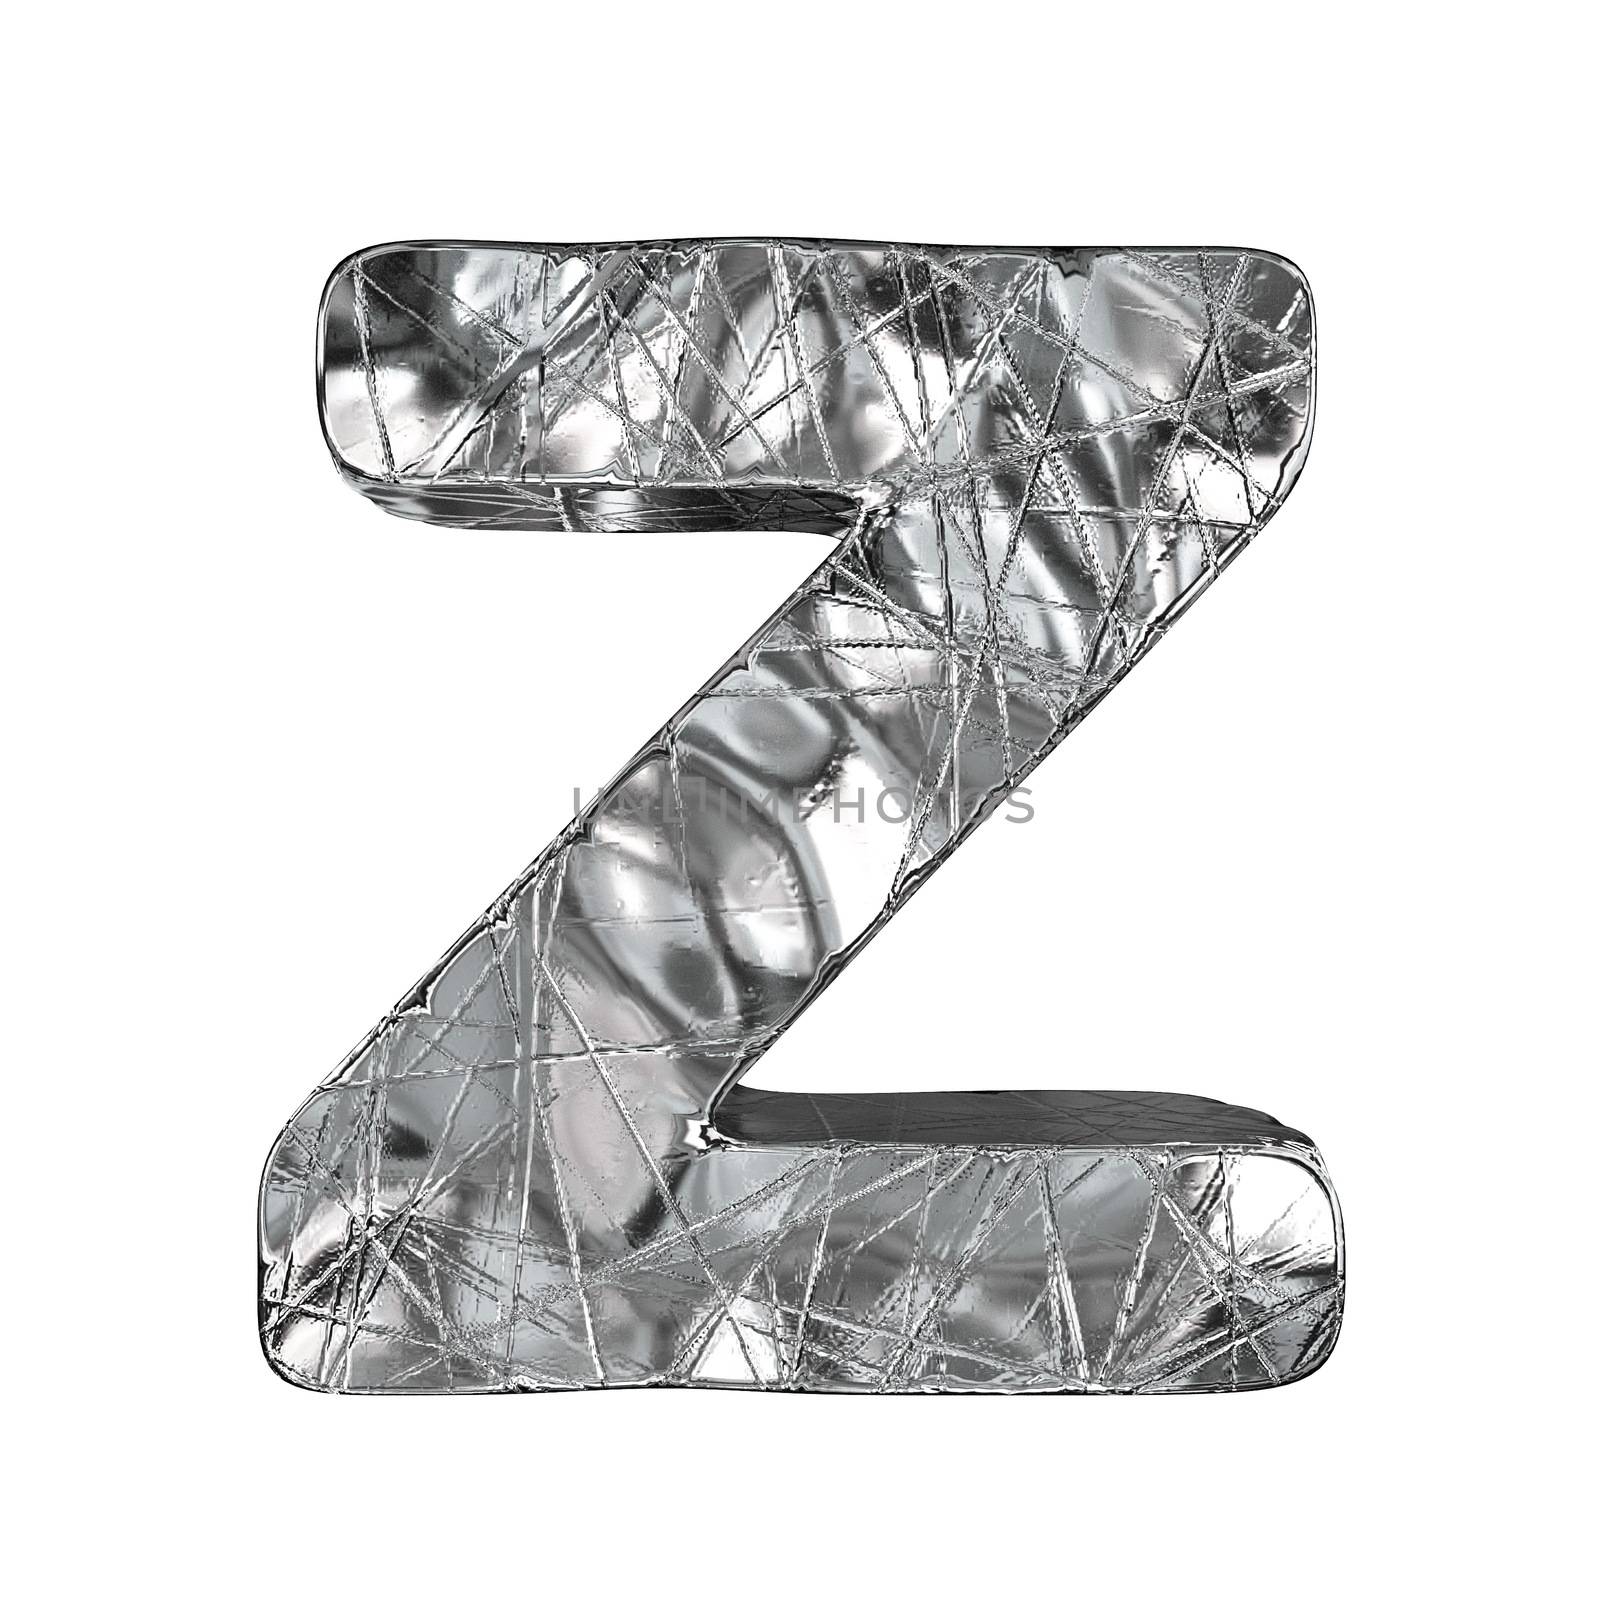 Grunge aluminium foil font letter Z 3D render illustration isolated on white background